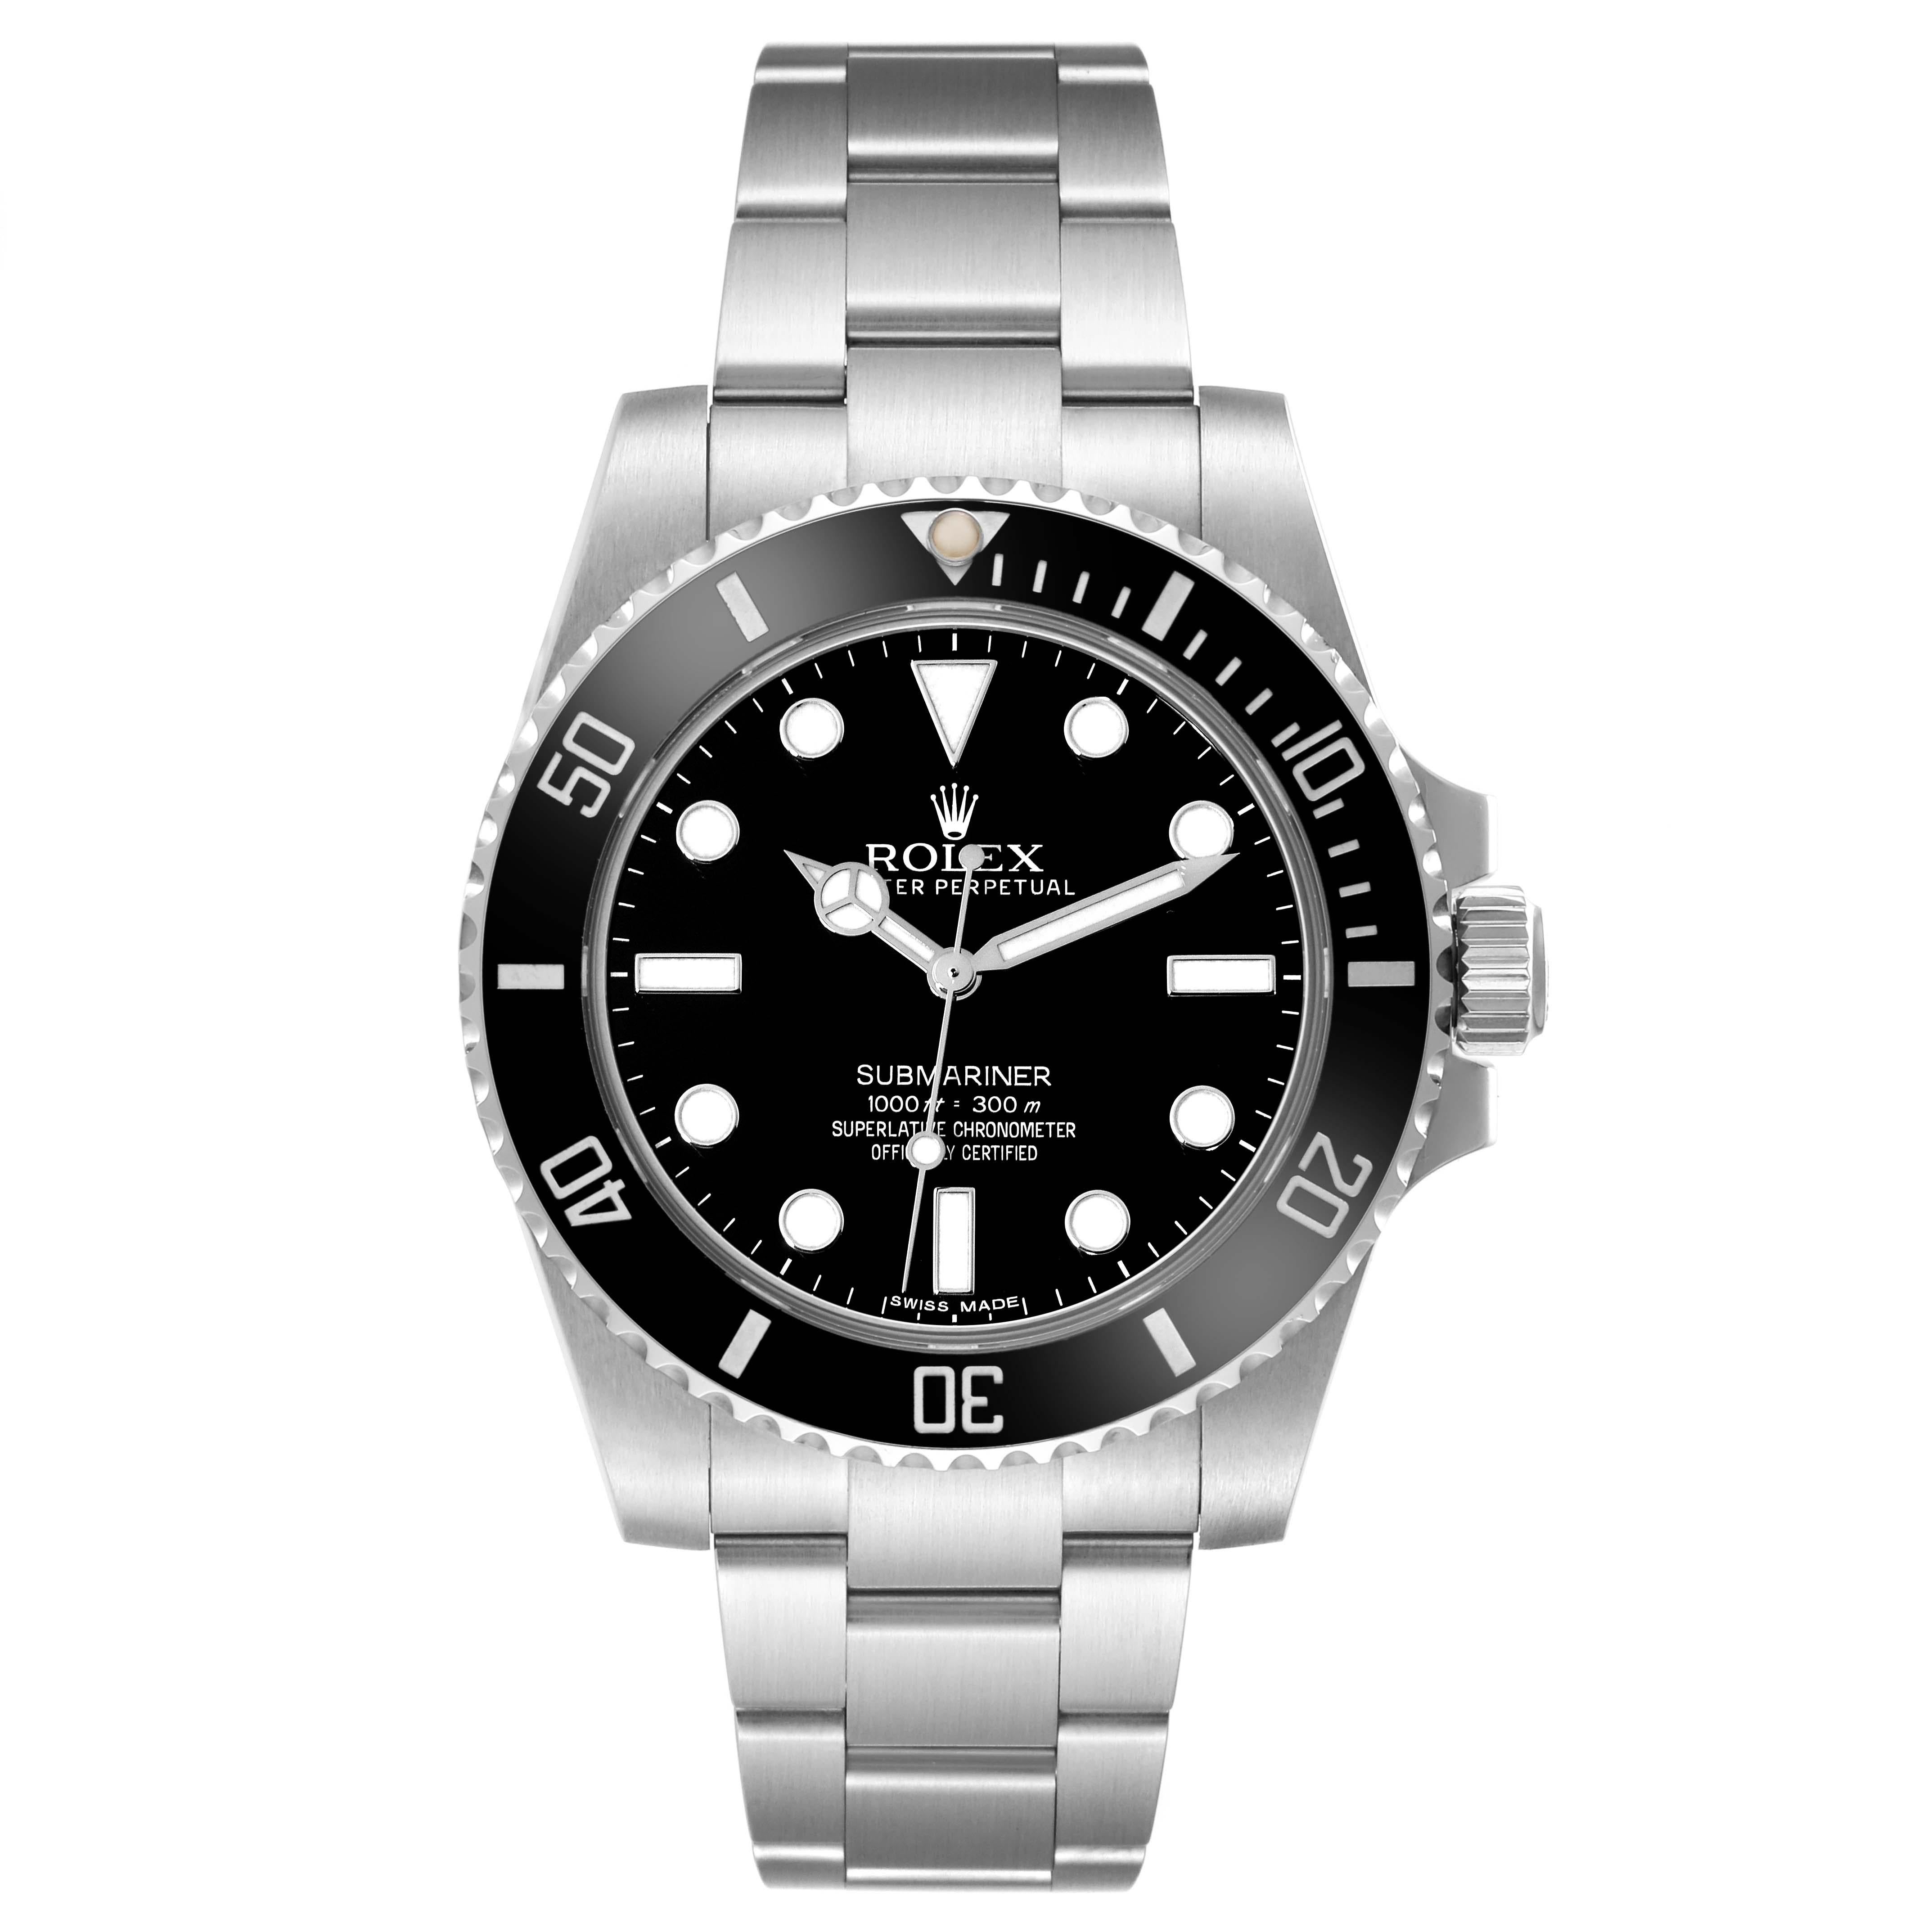 Rolex Submariner Black Dial Ceramic Bezel Steel Mens Watch 114060. Mouvement automatique à remontage automatique, officiellement certifié chronomètre. Boîtier en acier inoxydable de 40.0 mm de diamètre. Logo Rolex sur la couronne. Lunette tournante